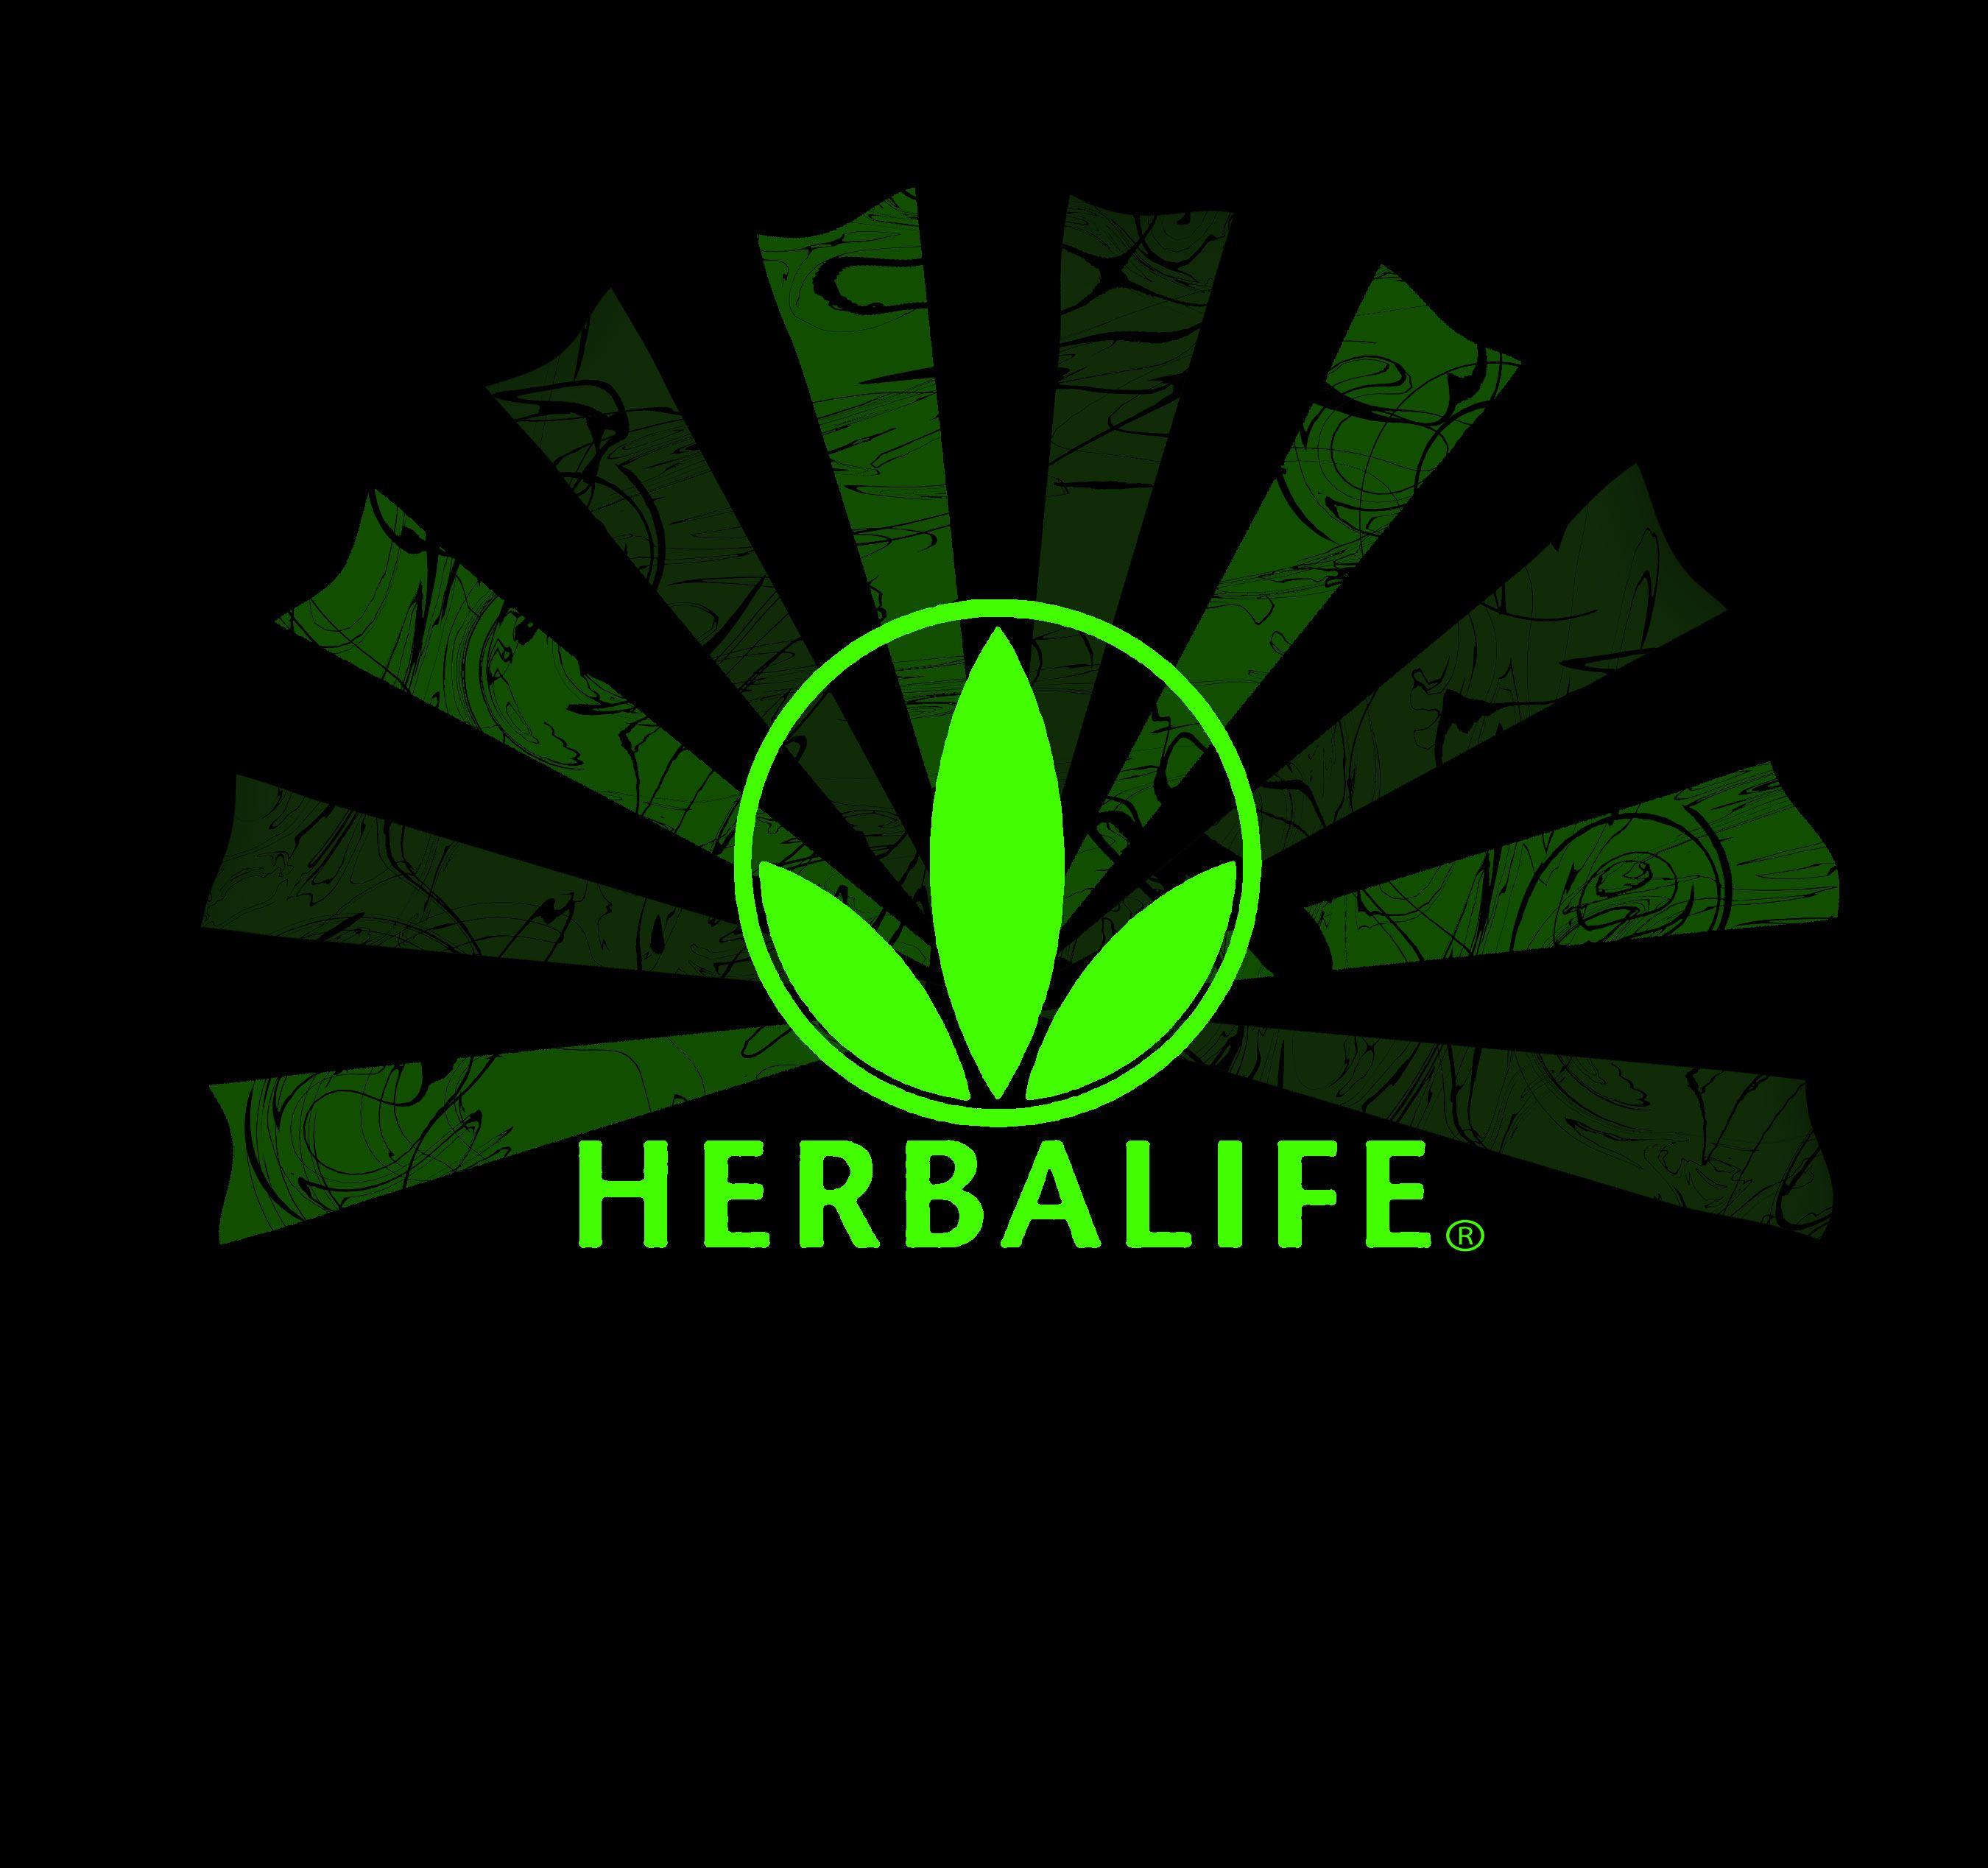 Herbalife HD wallpapers  Pxfuel